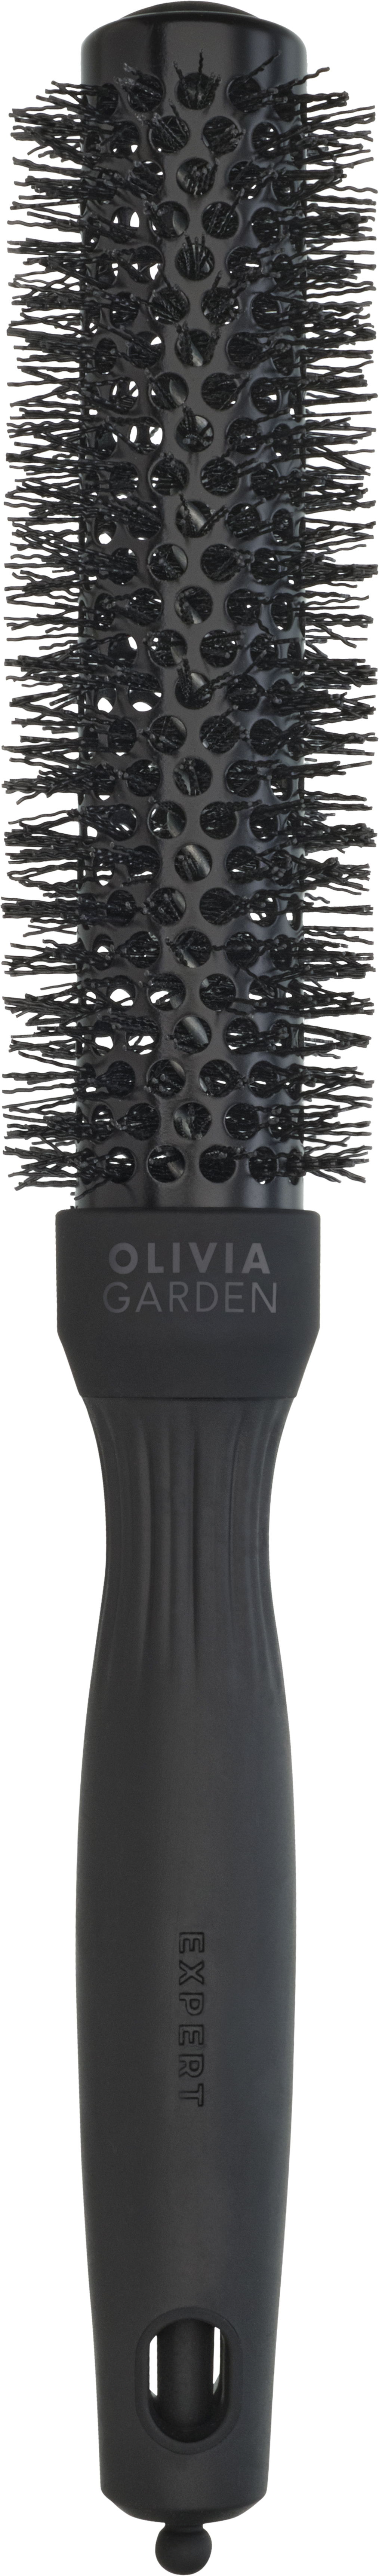 Olivia Garden Expert Blowout Speed Wavy Bristles Black Label 25